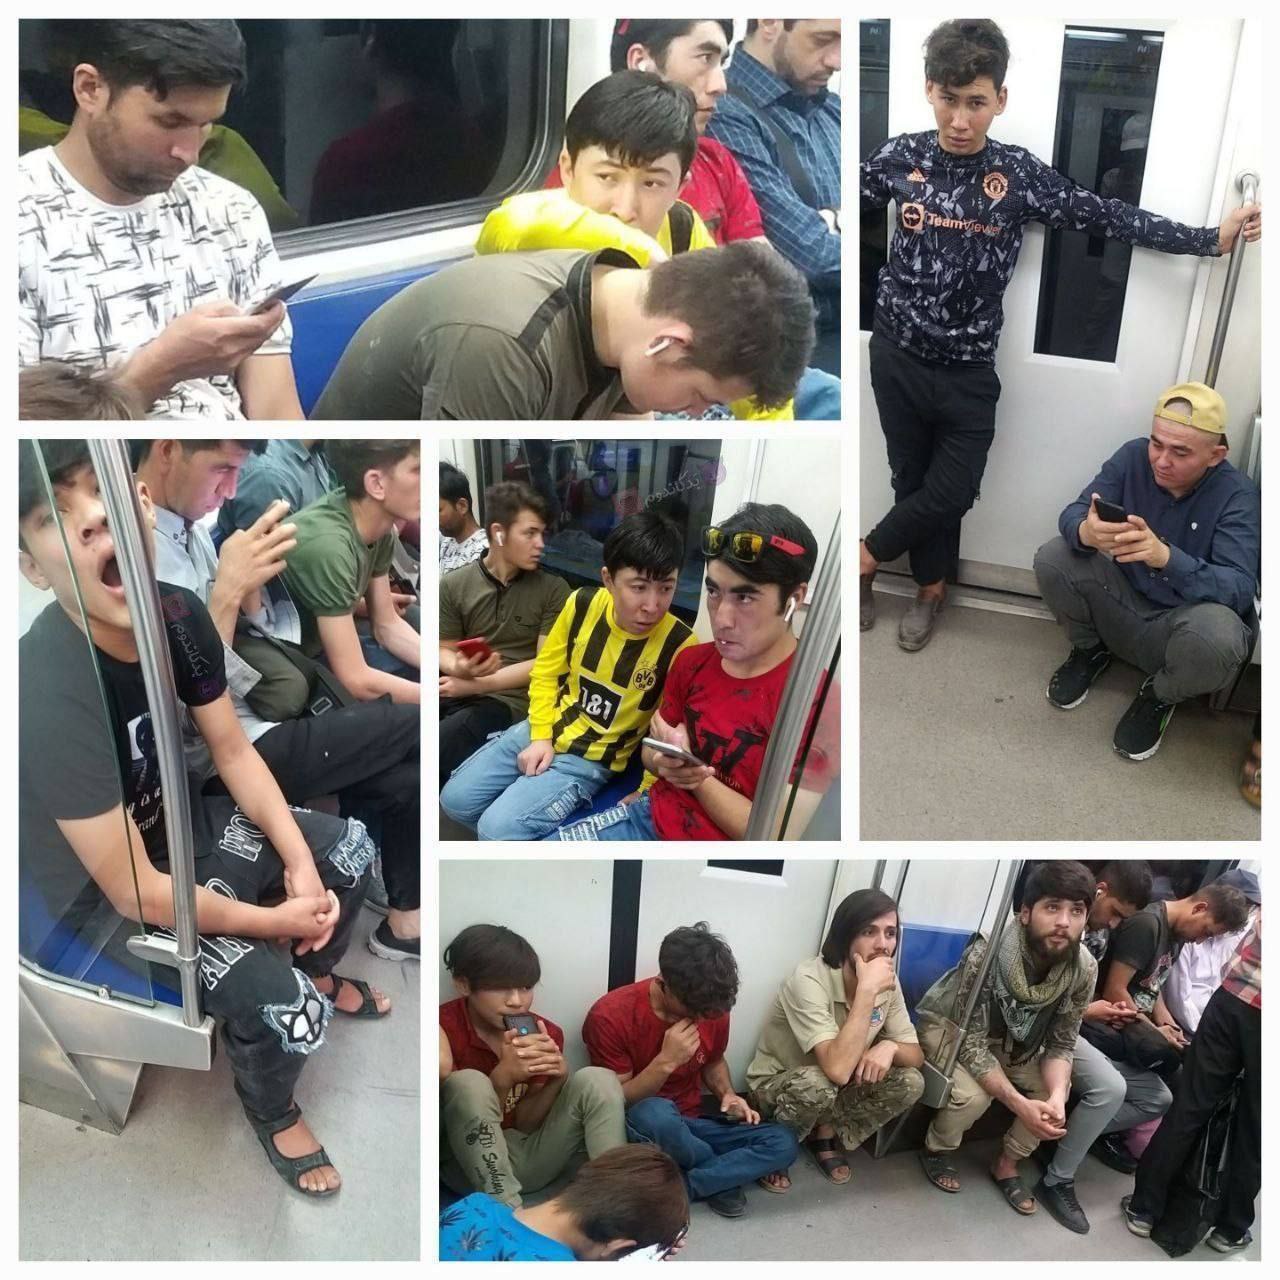 تصویر عجیب از تعداد زیاد اتباع افغانستانی در مترو تهران!